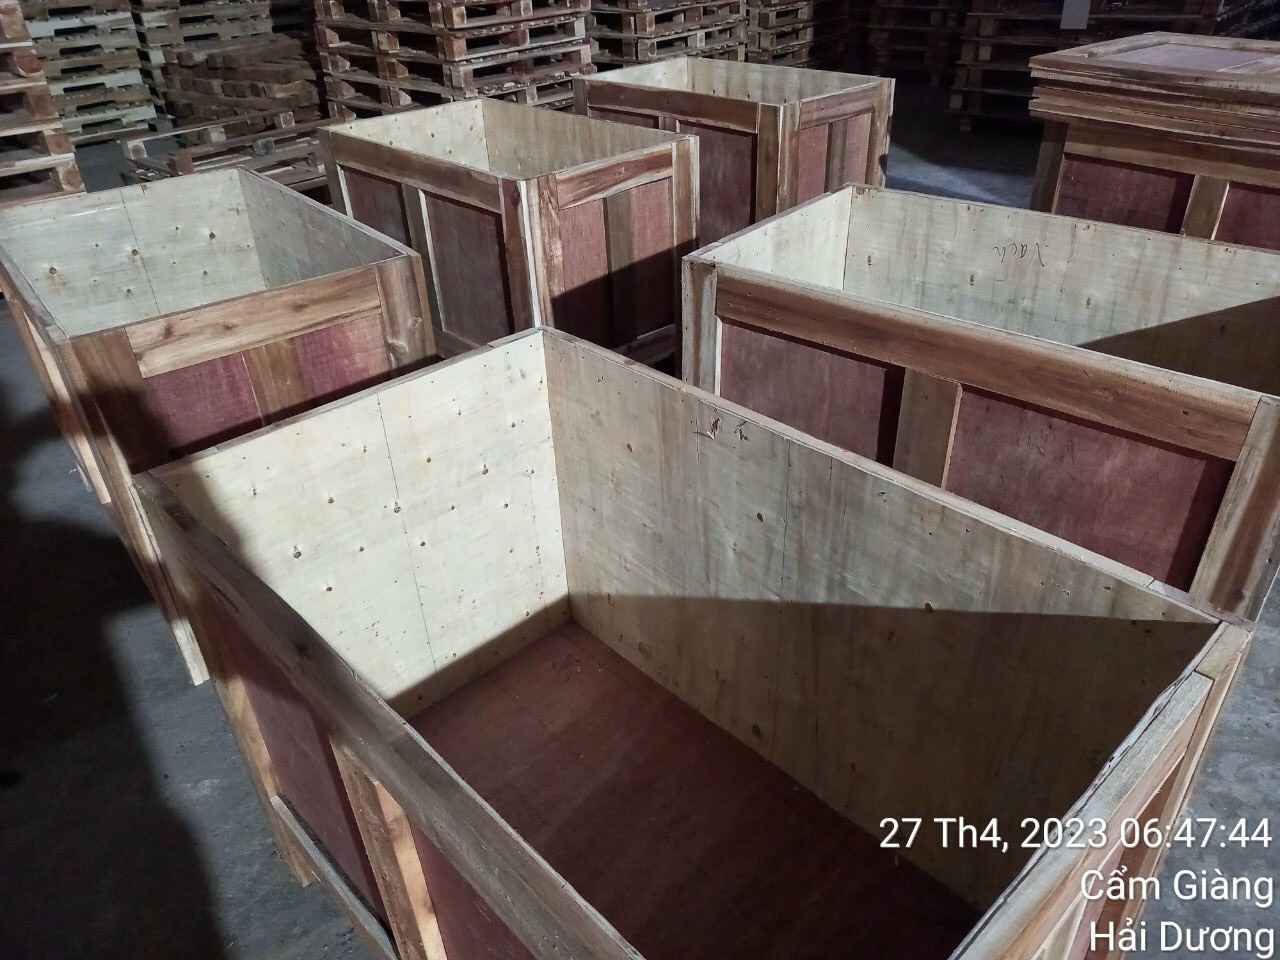 Sản xuất thùng gỗ tại Hải Dương - LH 0977248998